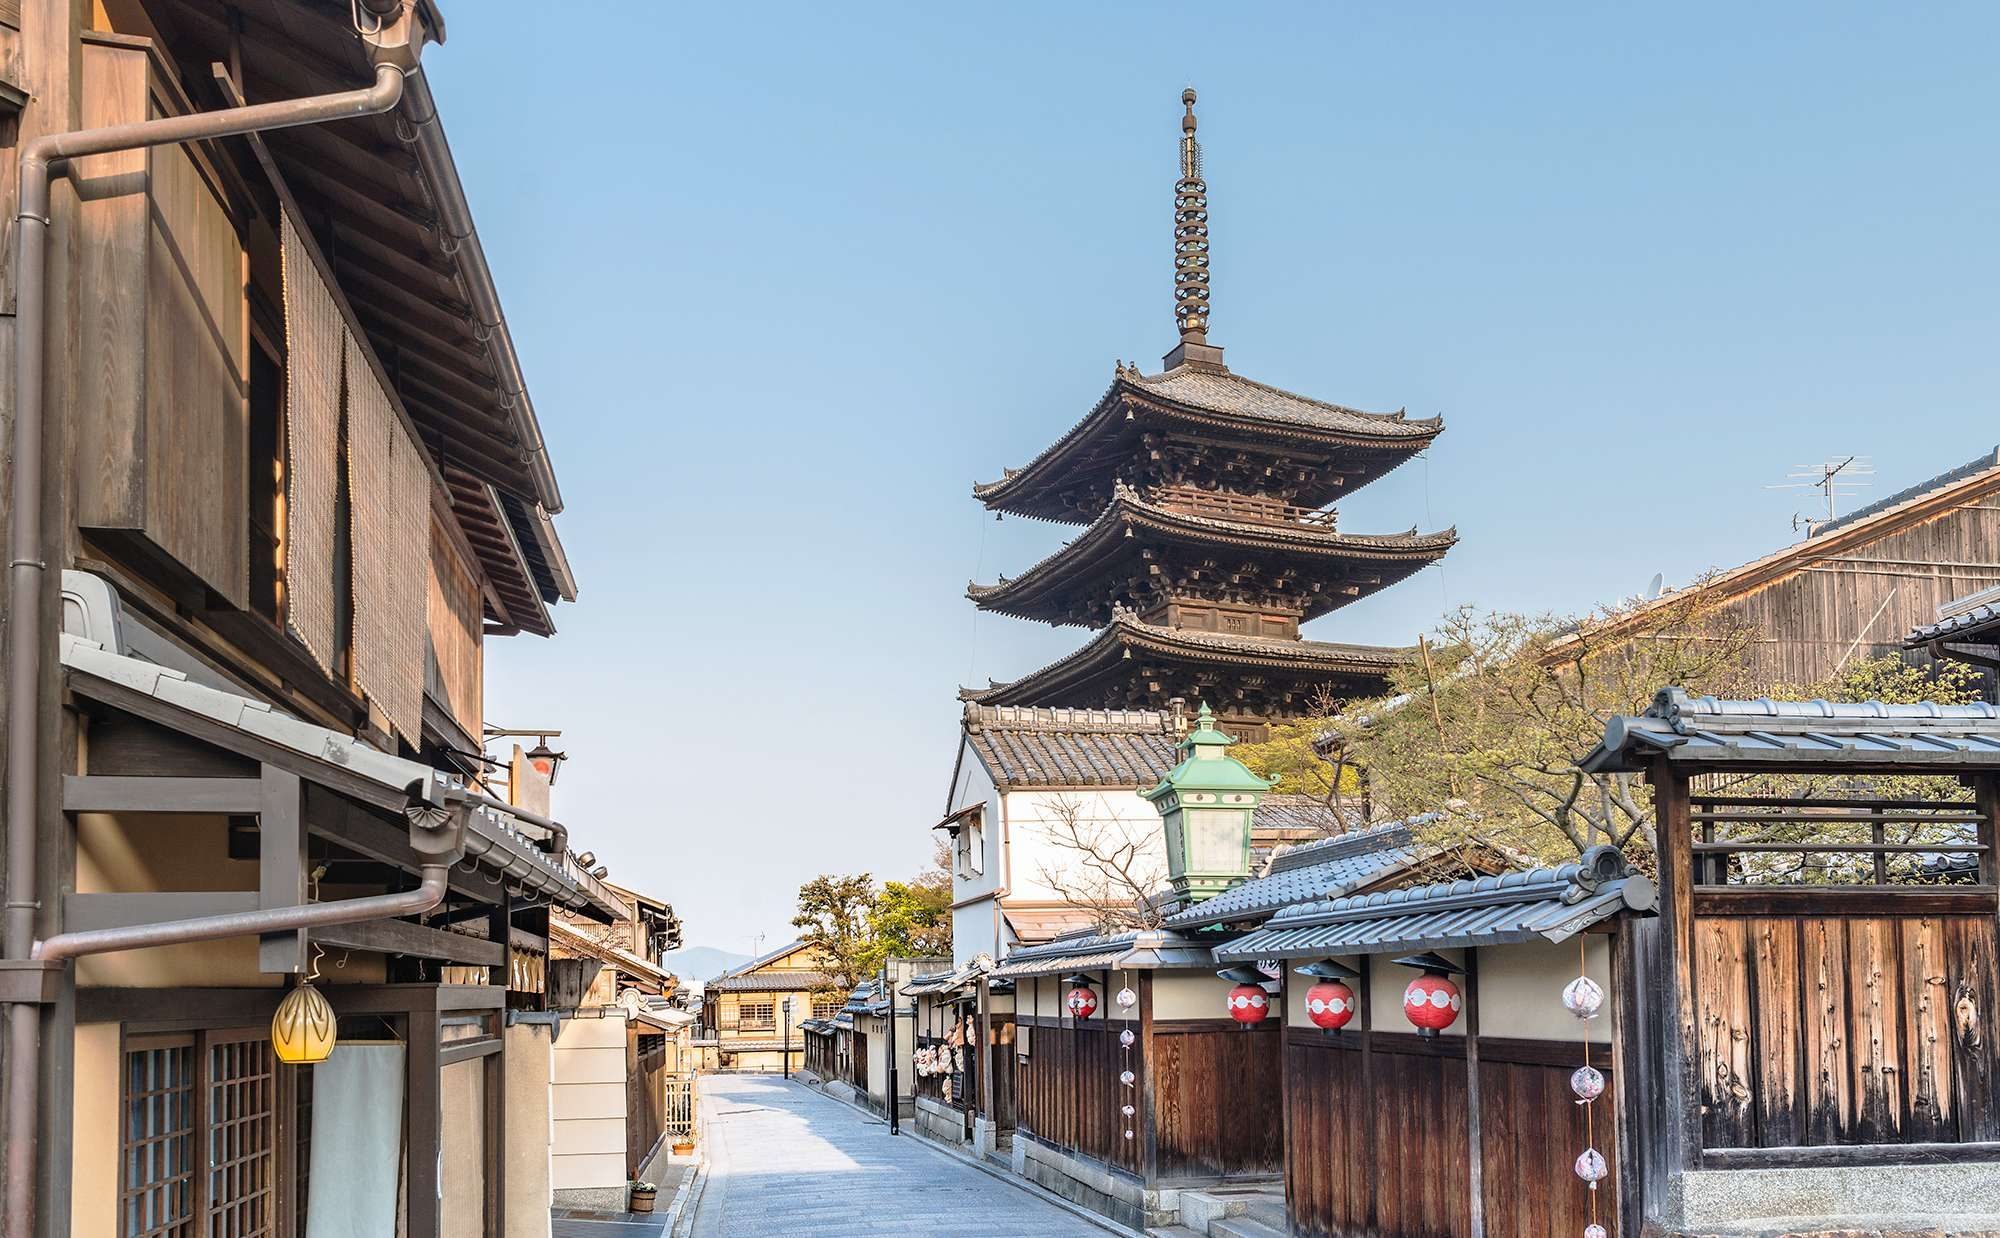 ホームズ 憧れの京都に住みたい 京都市民おすすめの暮らしやすいエリア 暮らし方から物件探し